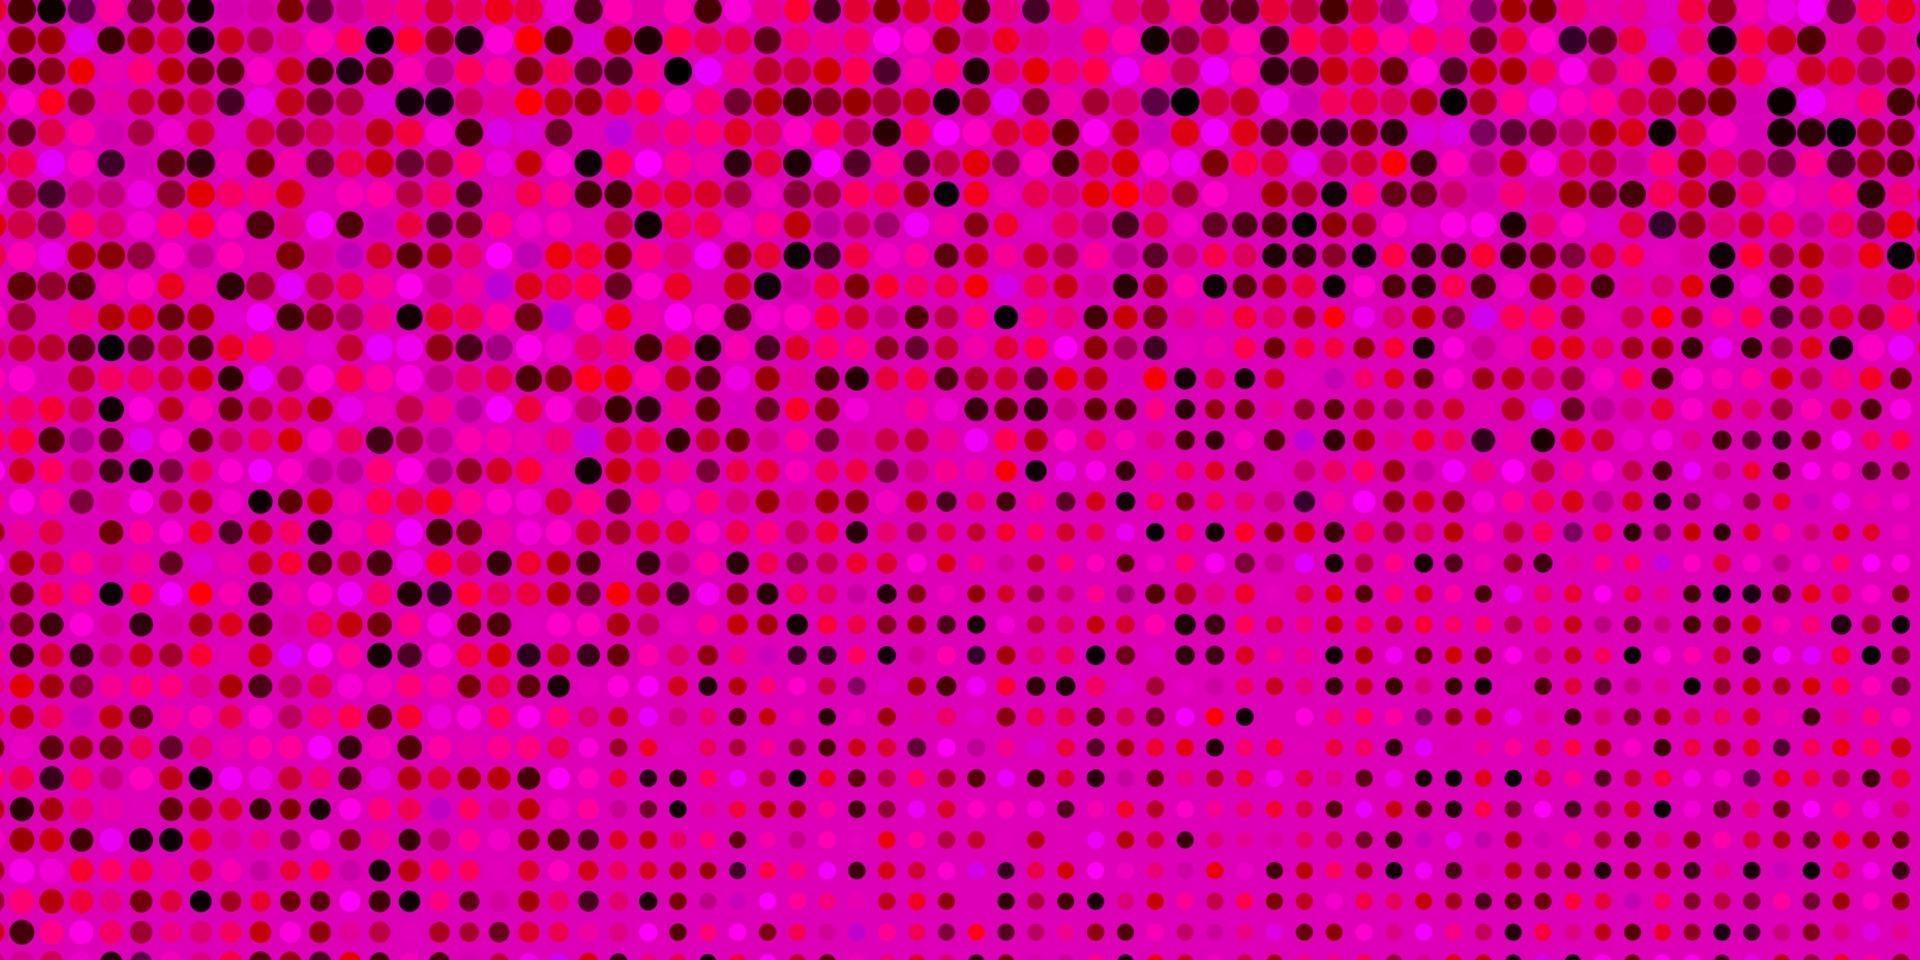 sfondo vettoriale rosa scuro con cerchi.